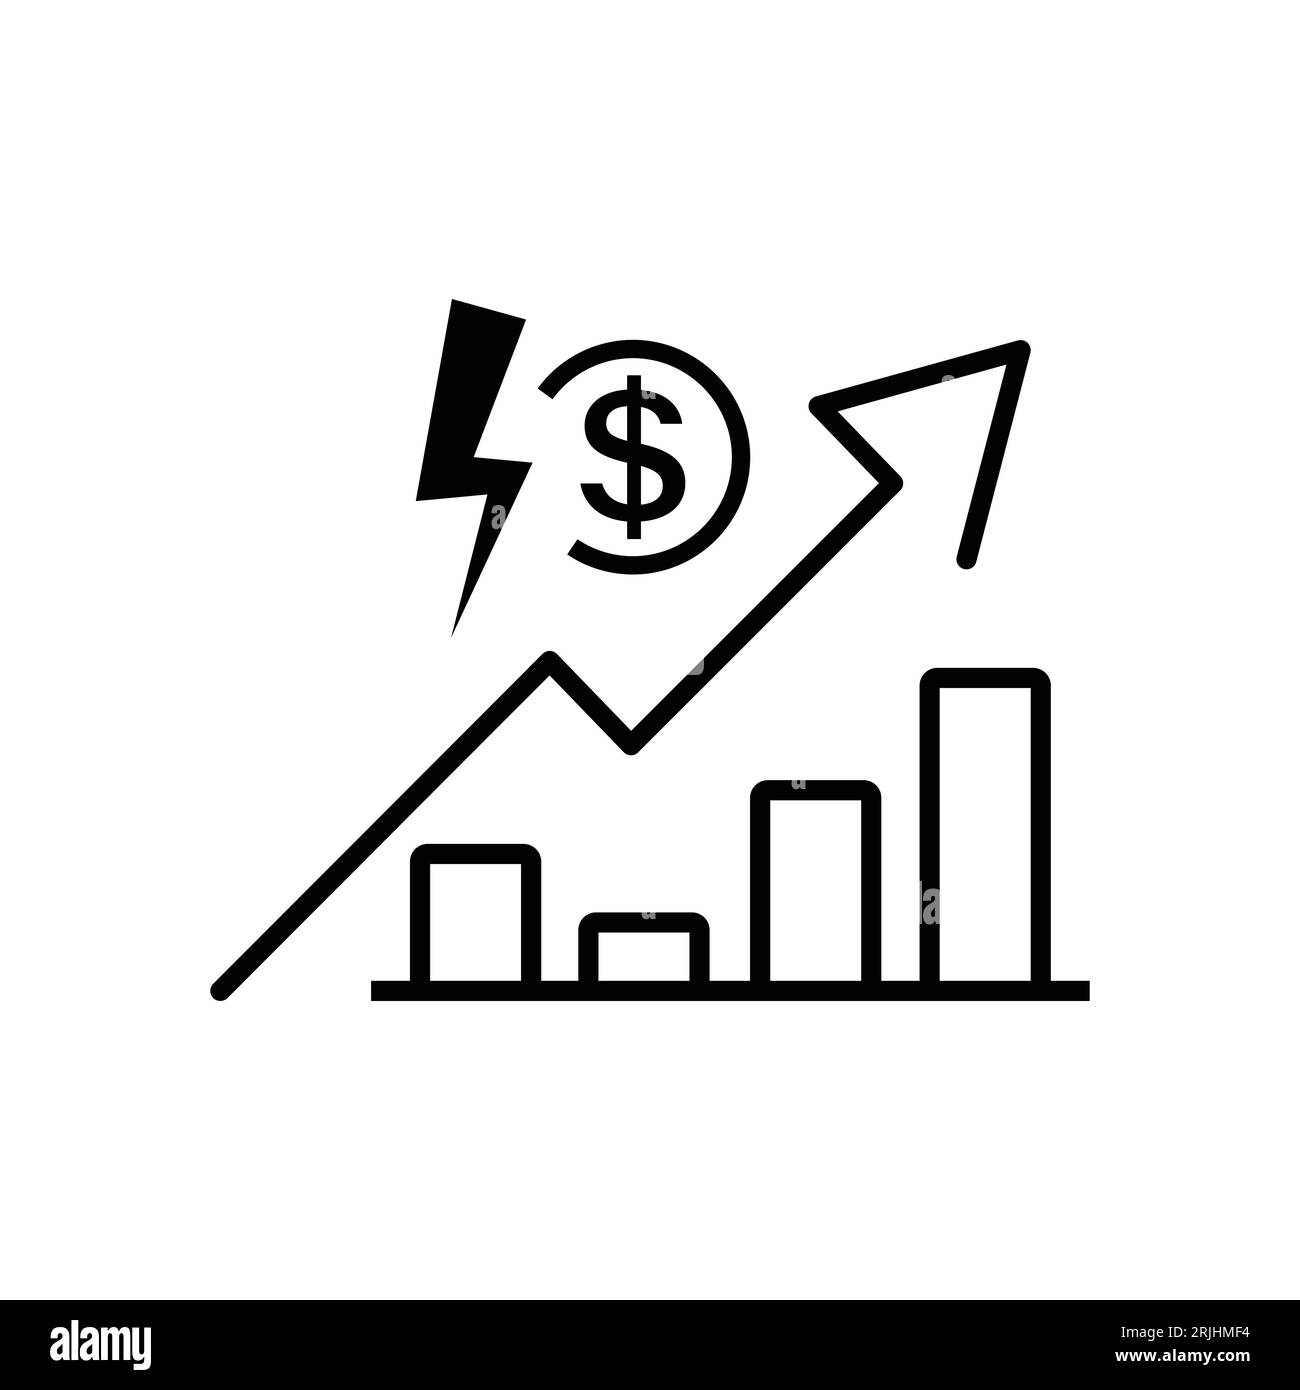 icona costo elettricità, prezzo o tariffa energia elettrica, simbolo di linea sottile su sfondo bianco. Illustrazione Vettoriale